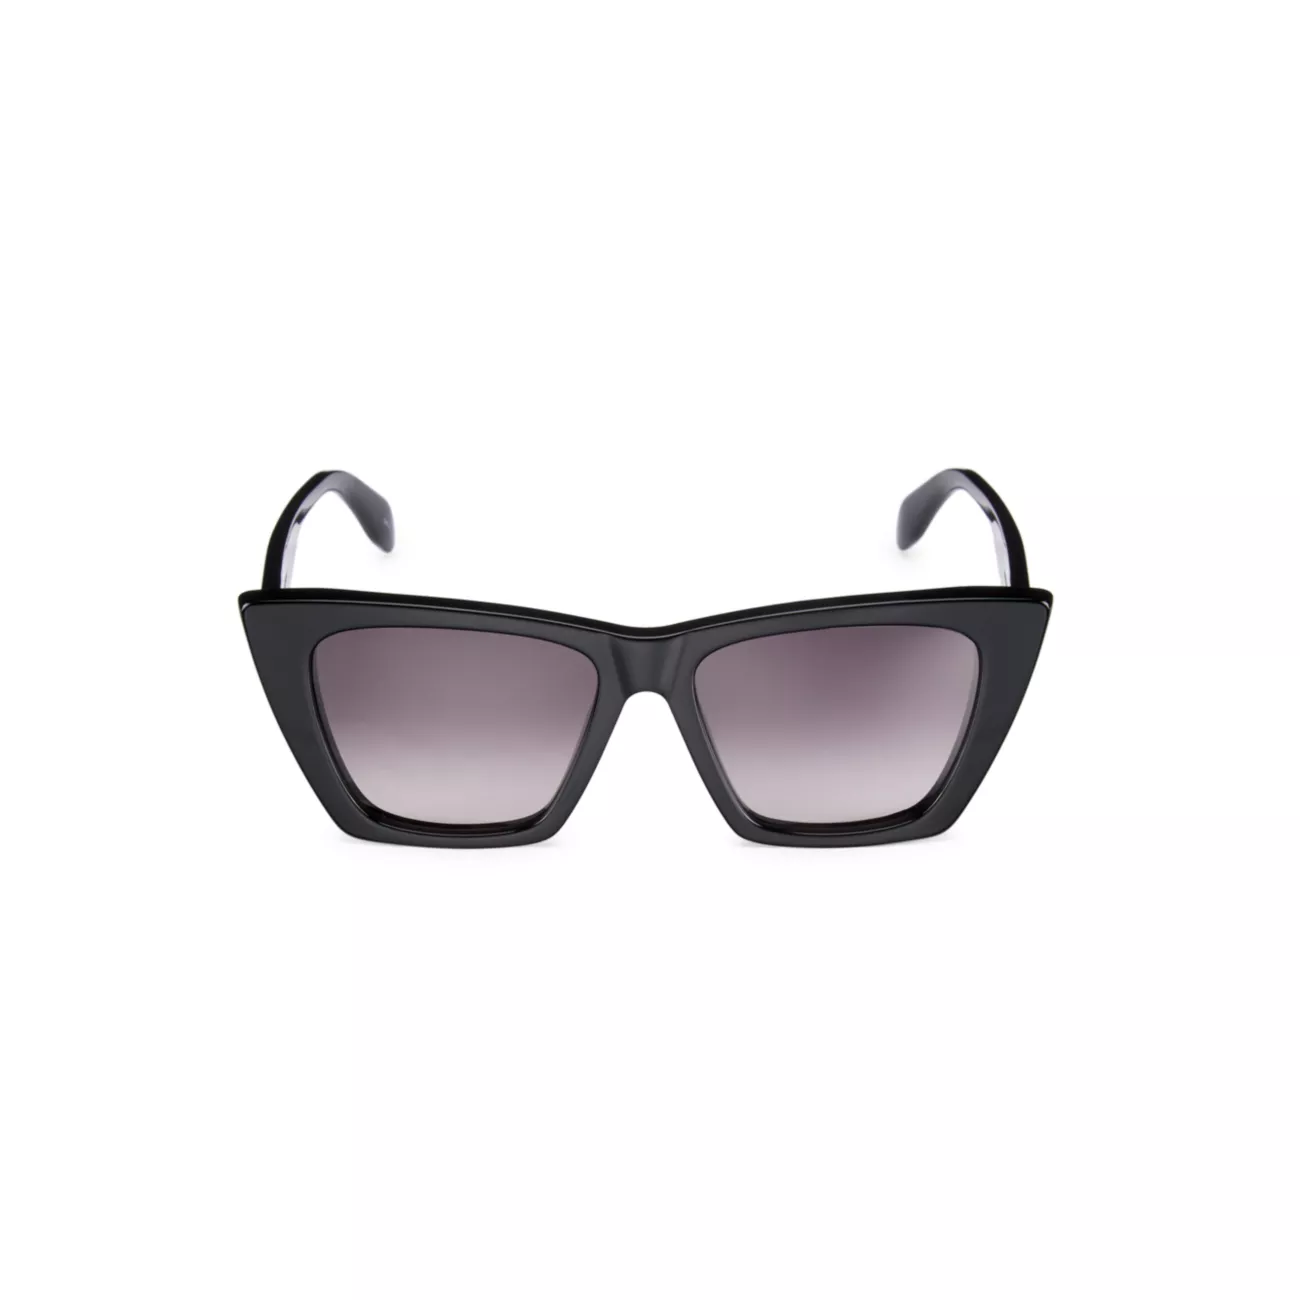 Фирменные солнцезащитные очки «кошачий глаз» 54 мм Alexander McQueen